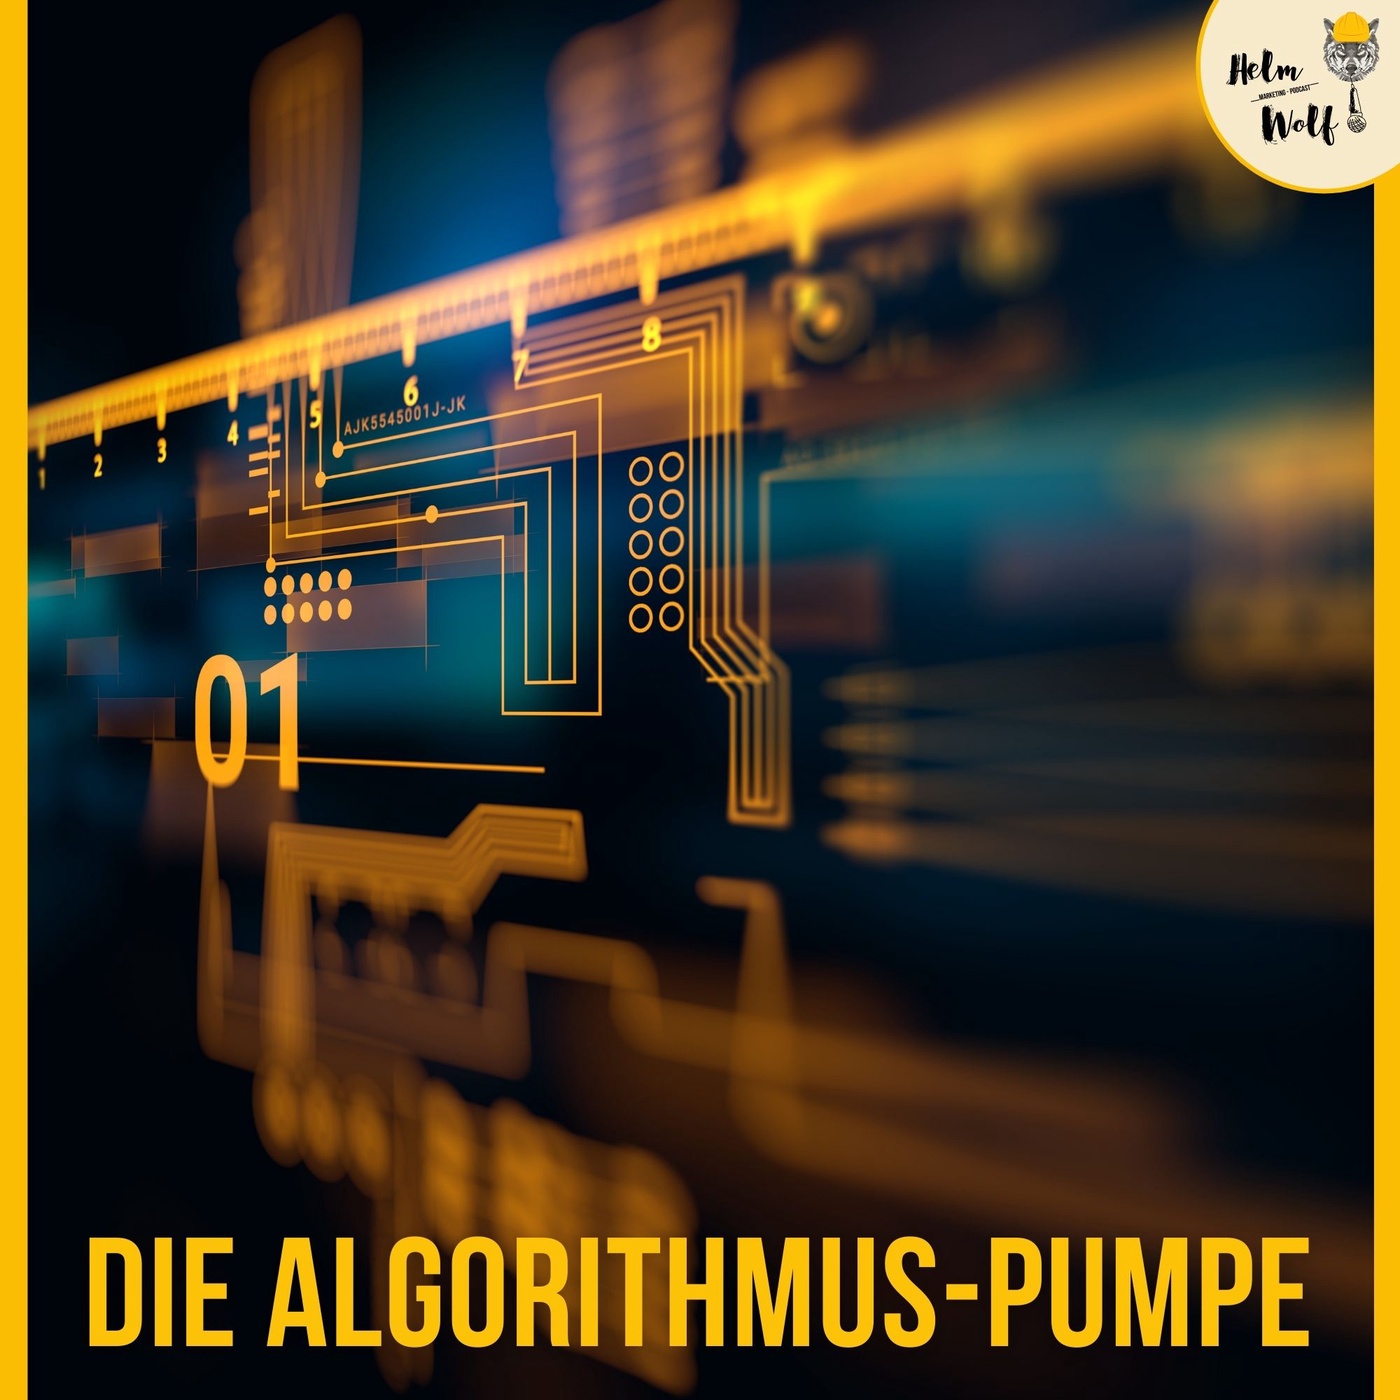 Die Algorithmus-Pumpe | Helmwolf Marketing Podcast #115